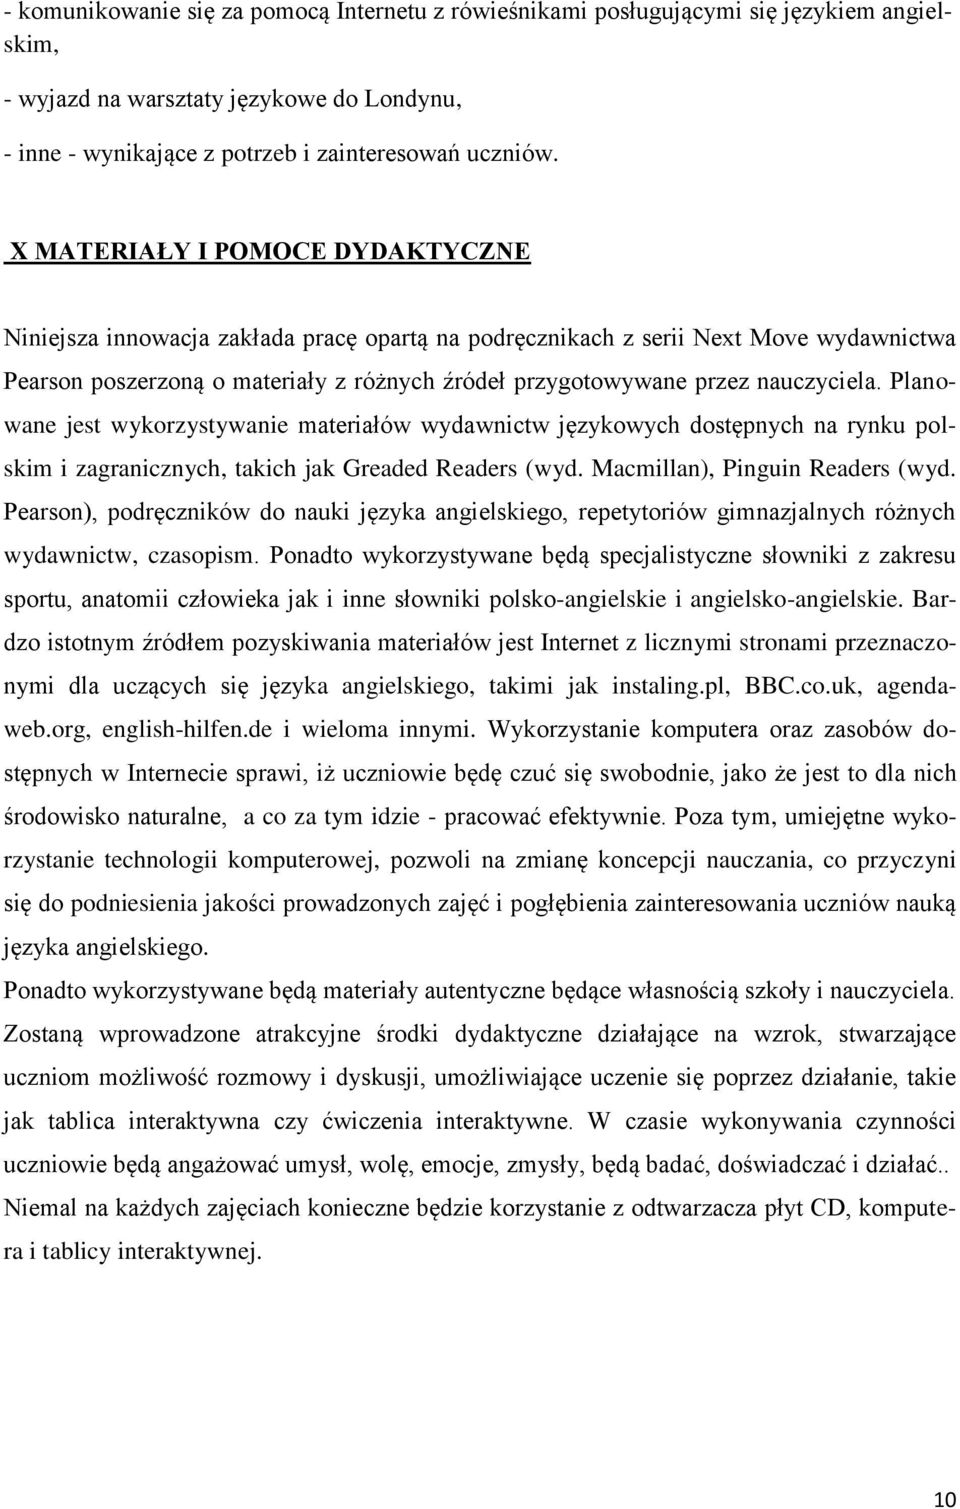 nauczyciela. Planowane jest wykorzystywanie materiałów wydawnictw językowych dostępnych na rynku polskim i zagranicznych, takich jak Greaded Readers (wyd. Macmillan), Pinguin Readers (wyd.